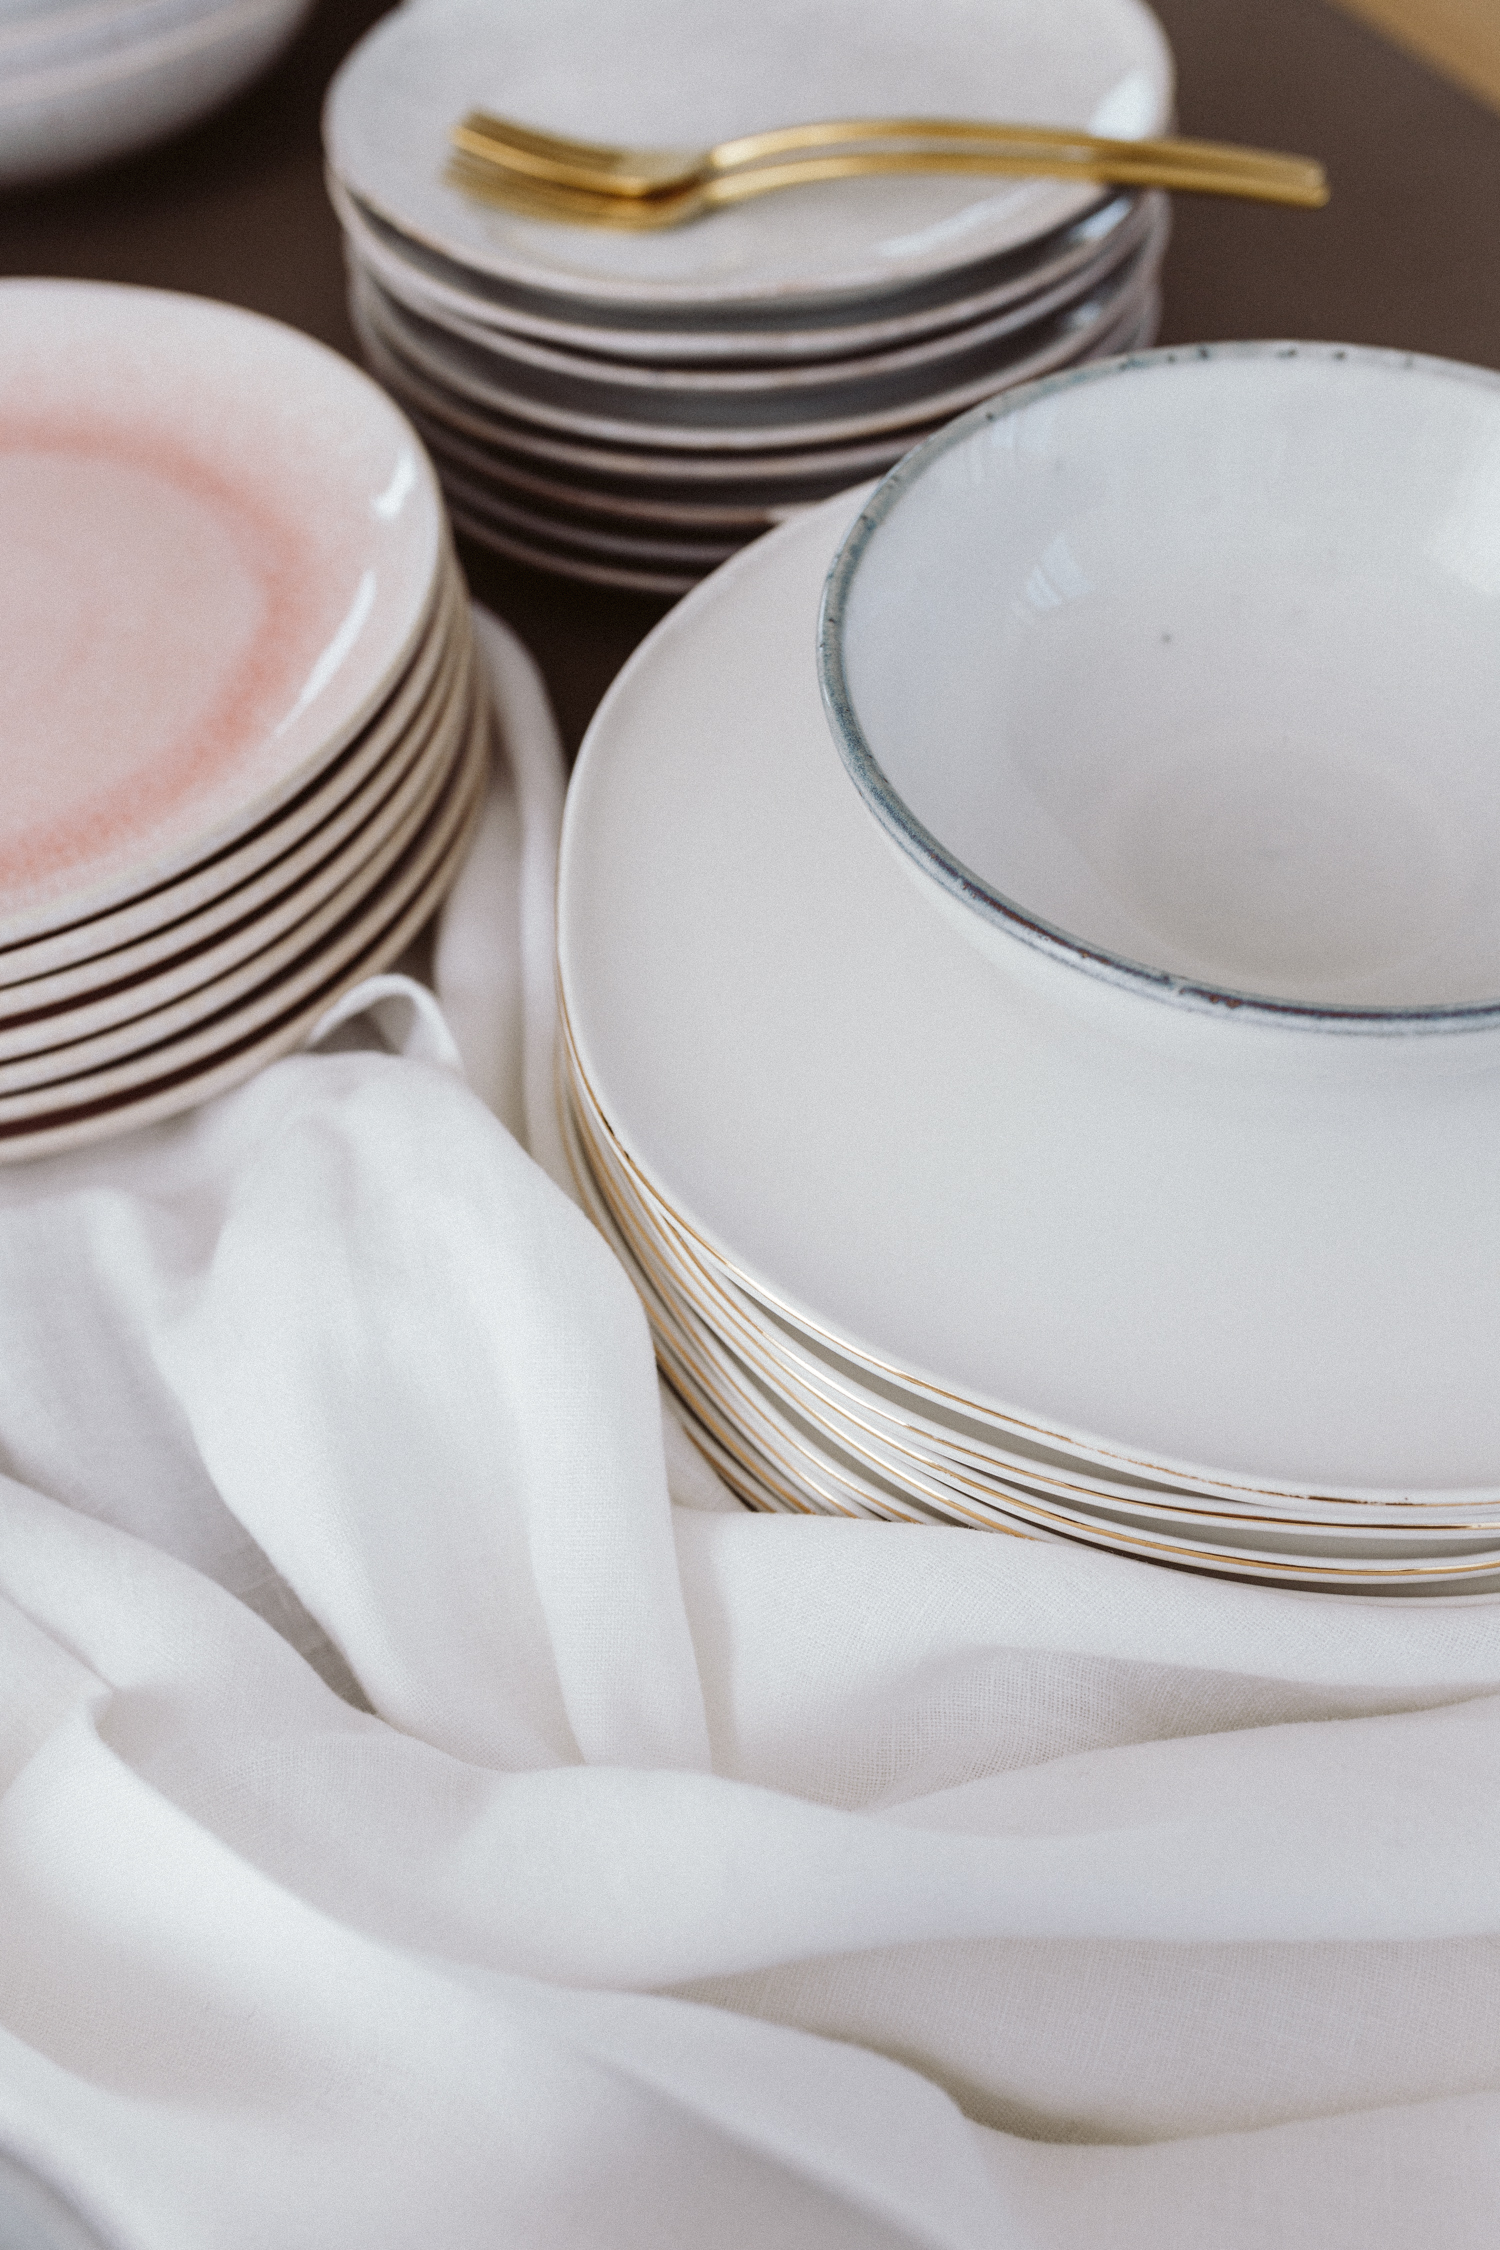 Our Tableware: The best handmade ceramics brands - Bikinis & Passports